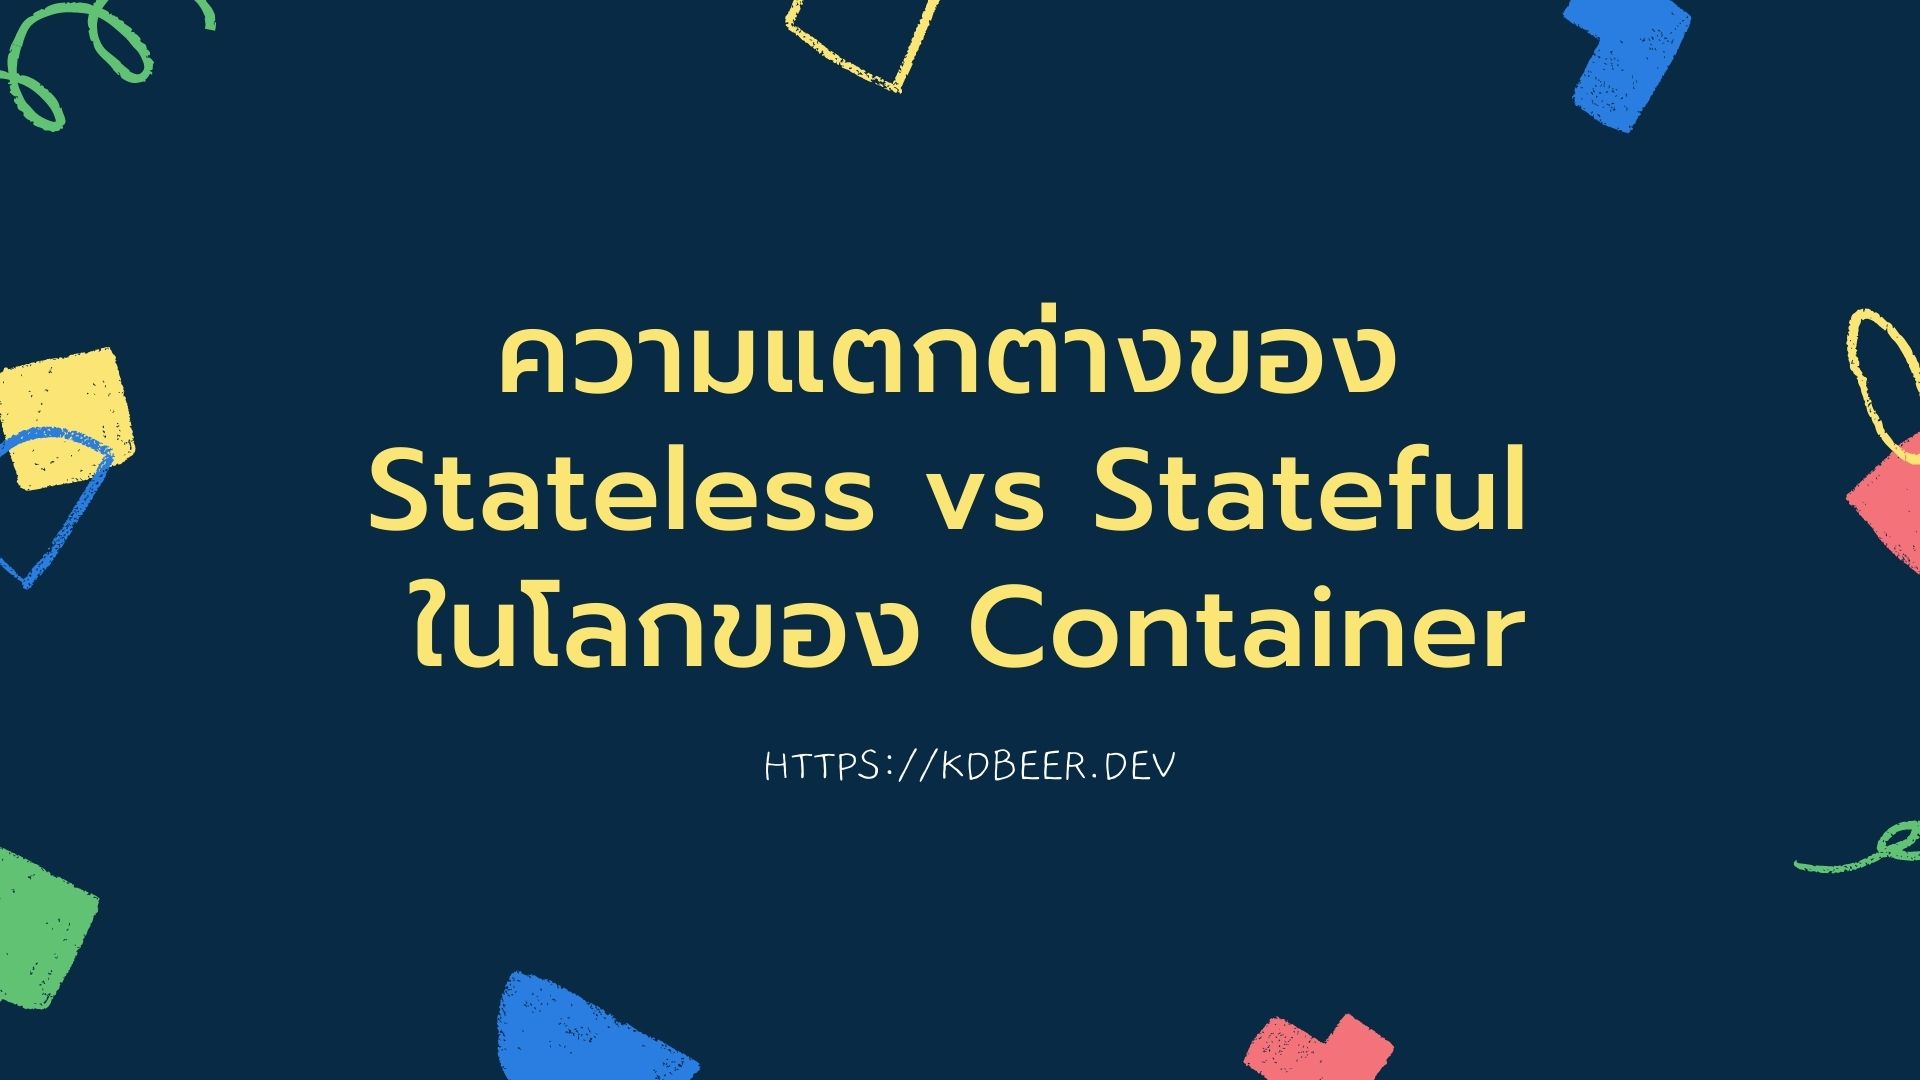 ความแตกต่างของ Stateless vs Stateful ในโลกของ Container